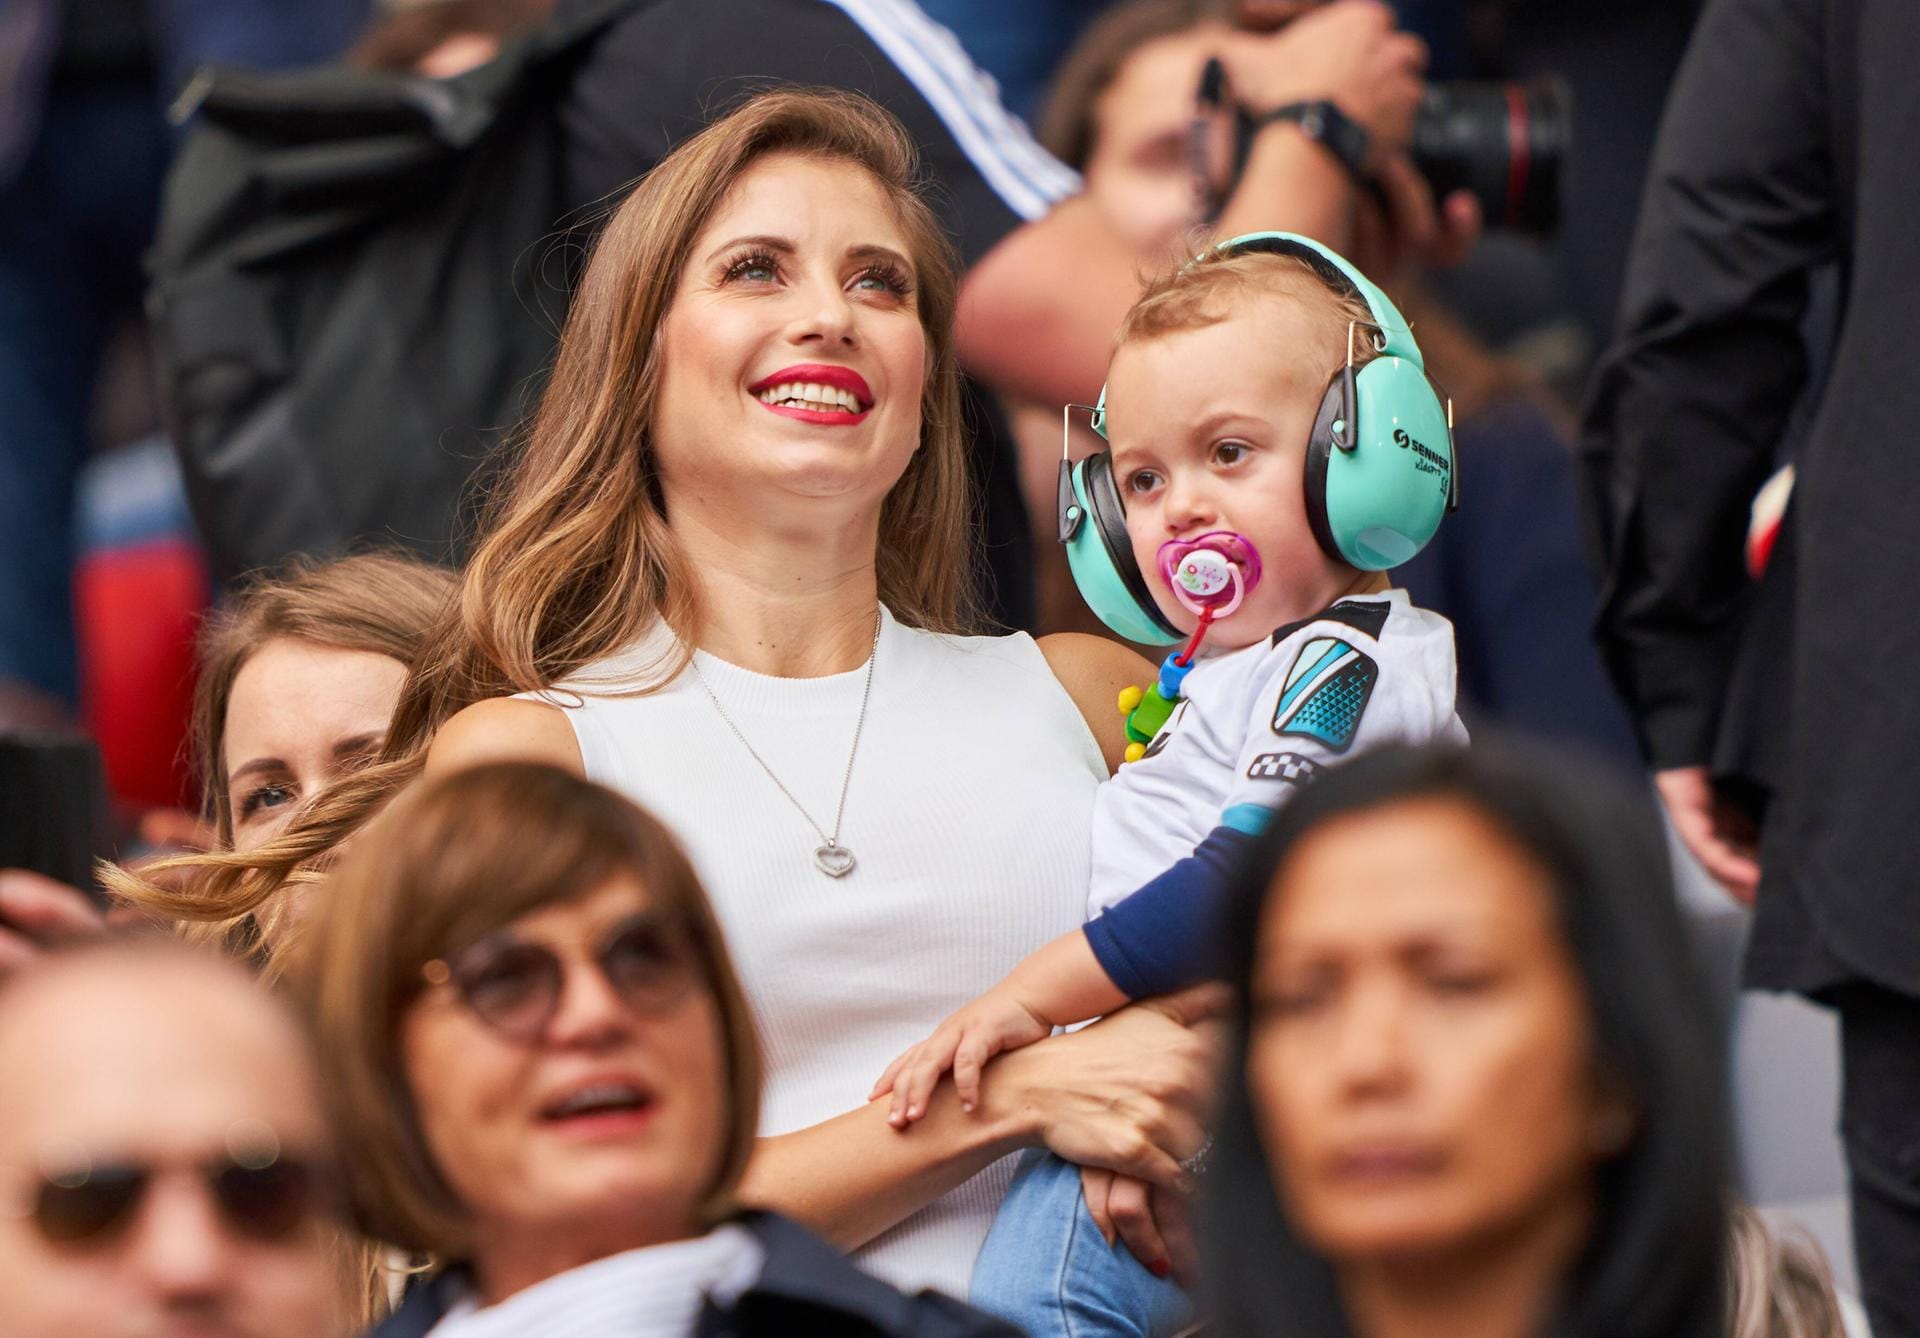 2019: Bei den Besuchen der Fußballspiele vom Papa, trägt Sohn Ludwig türkisfarbene Schutzhörer gegen den Stadionlärm, während er bei Mama auf dem Arm ist.